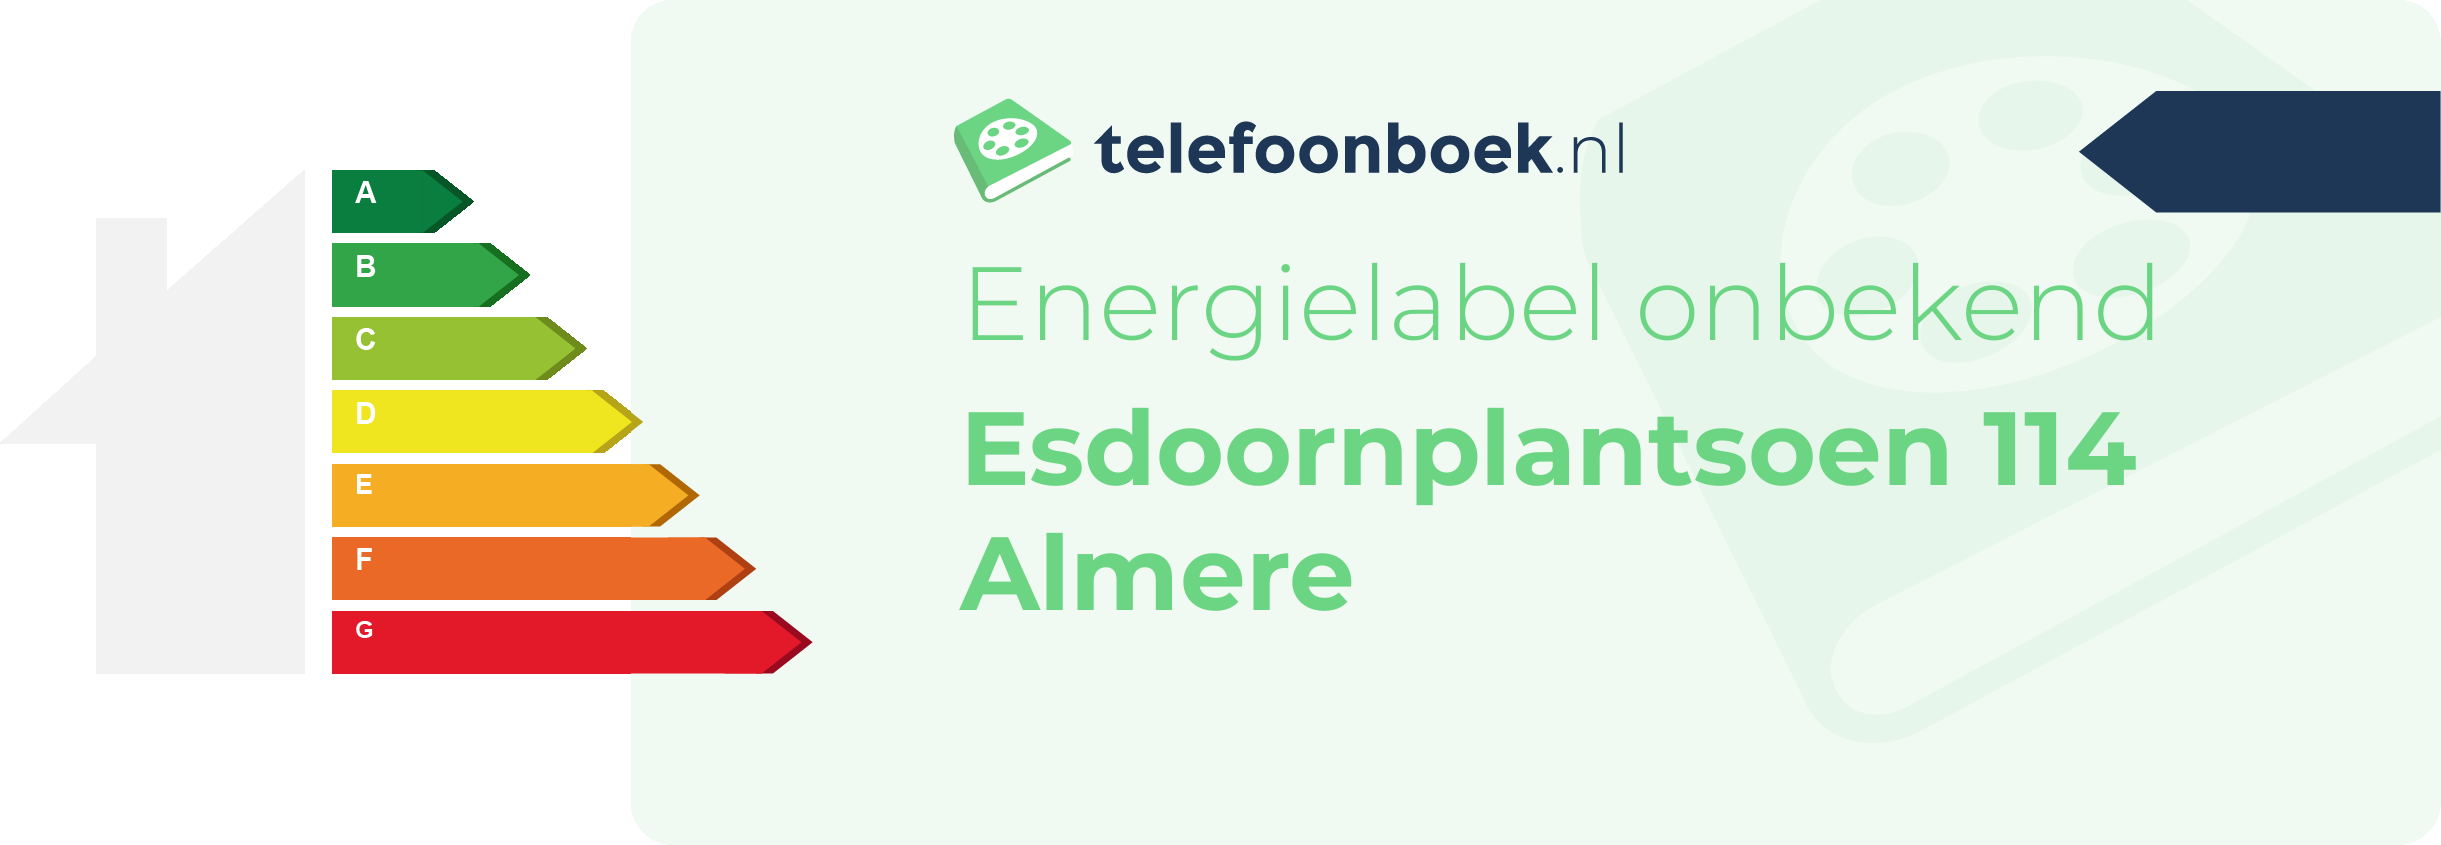 Energielabel Esdoornplantsoen 114 Almere